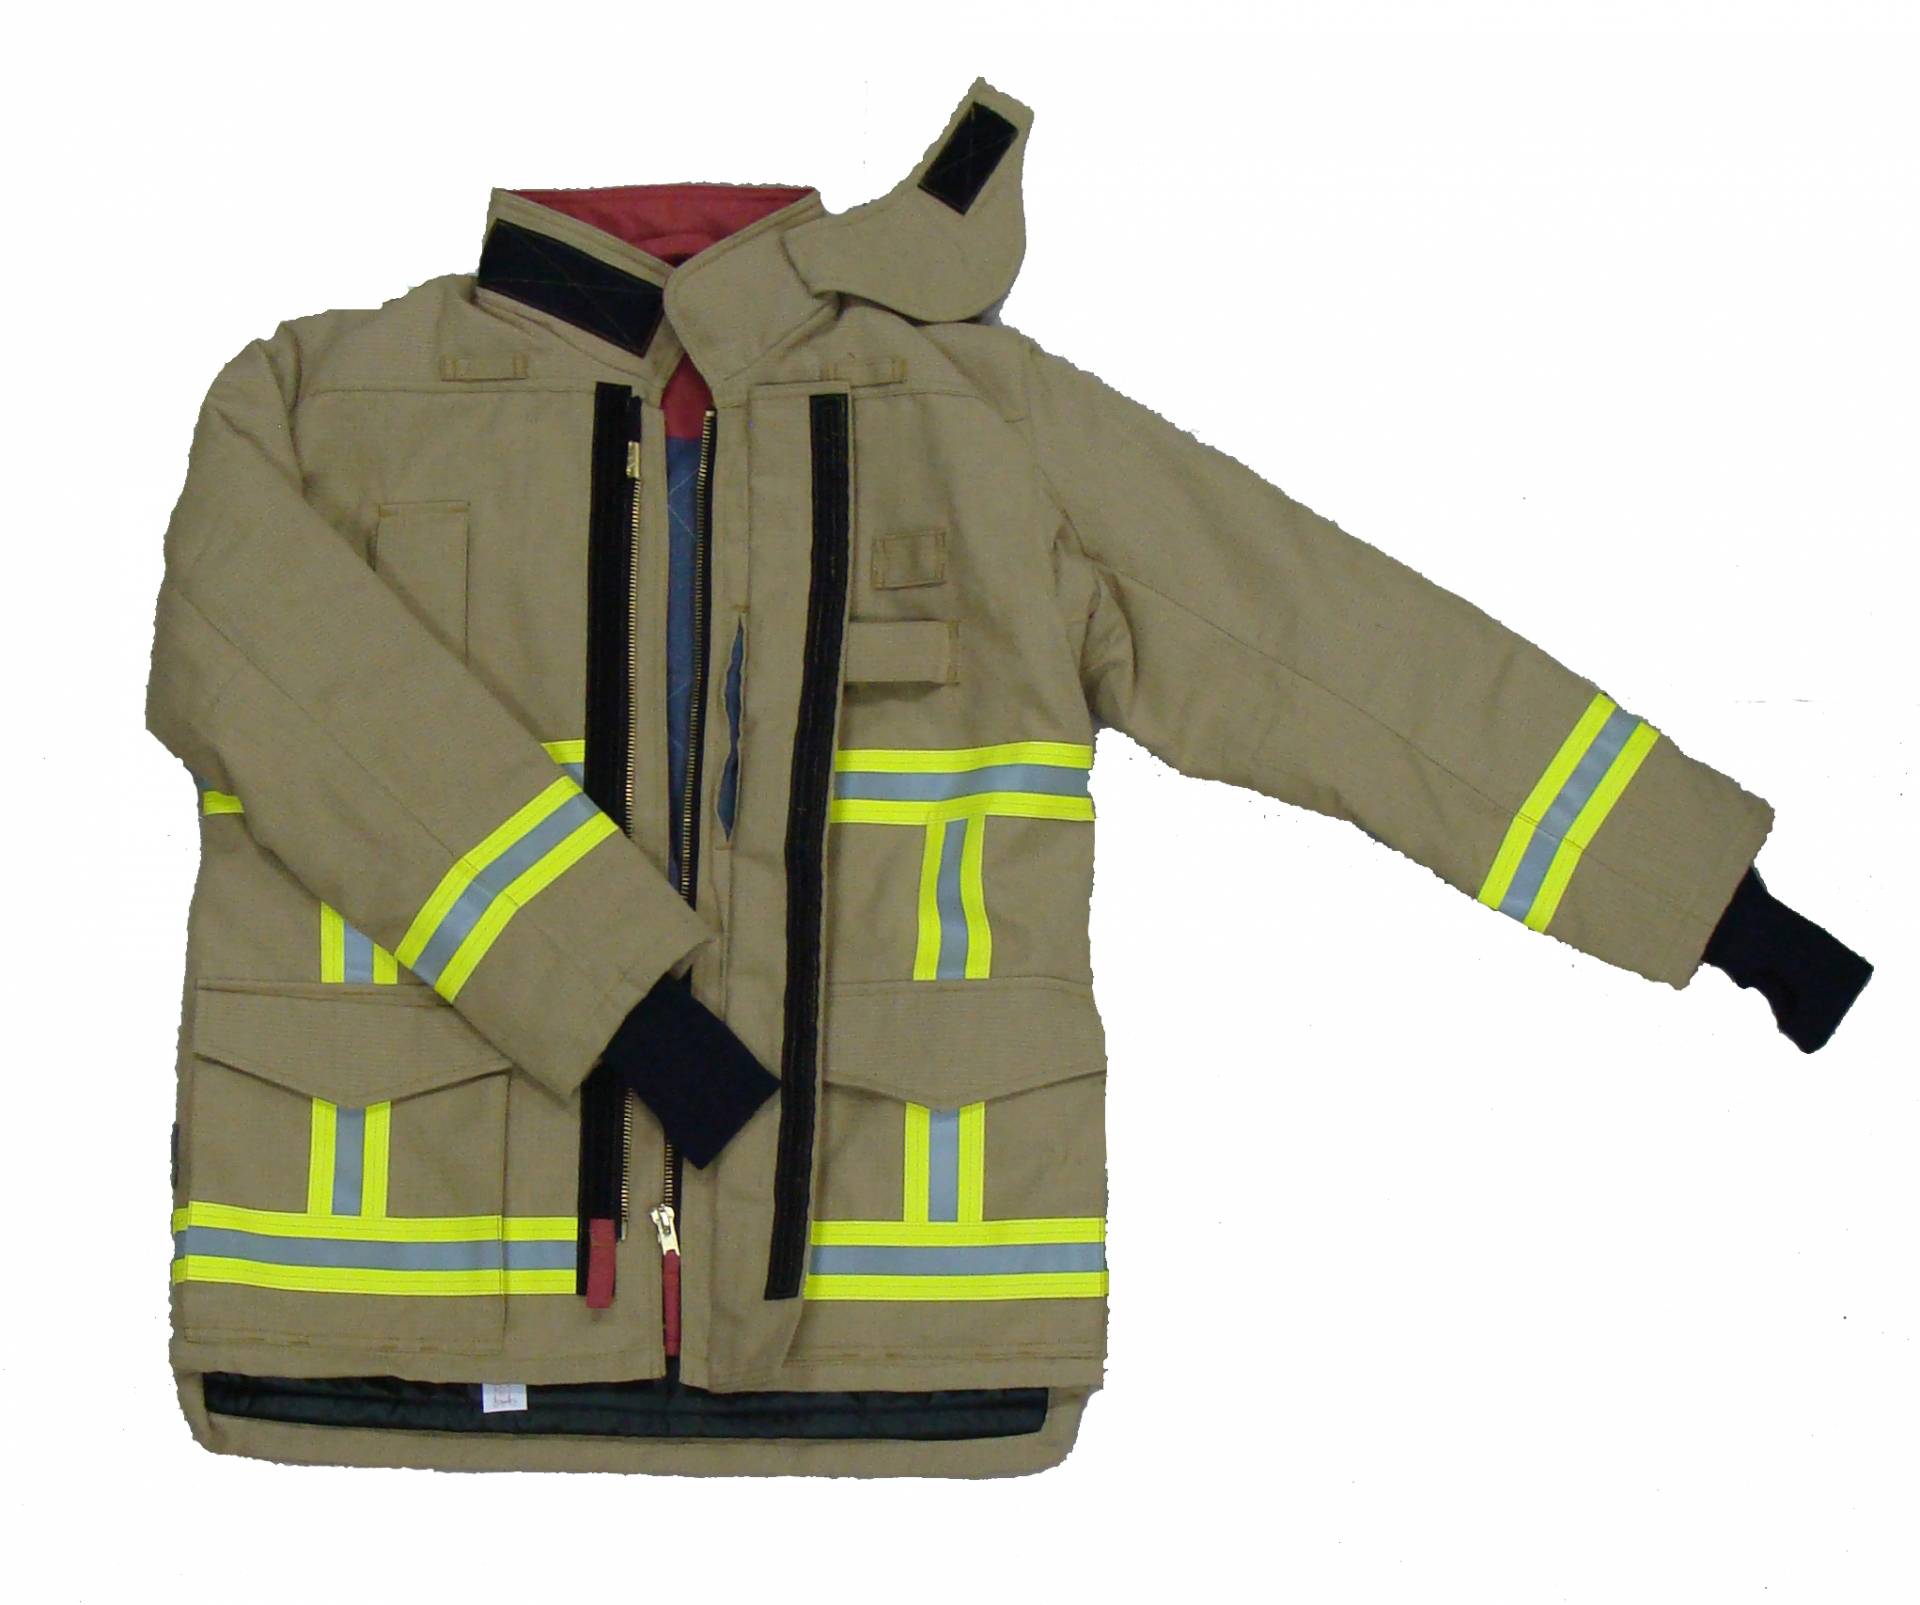 Tuta antincendio Premium 701-G in stile europeo, livello 2 EN469, certificato CE, resistente per proteggere i pompieri